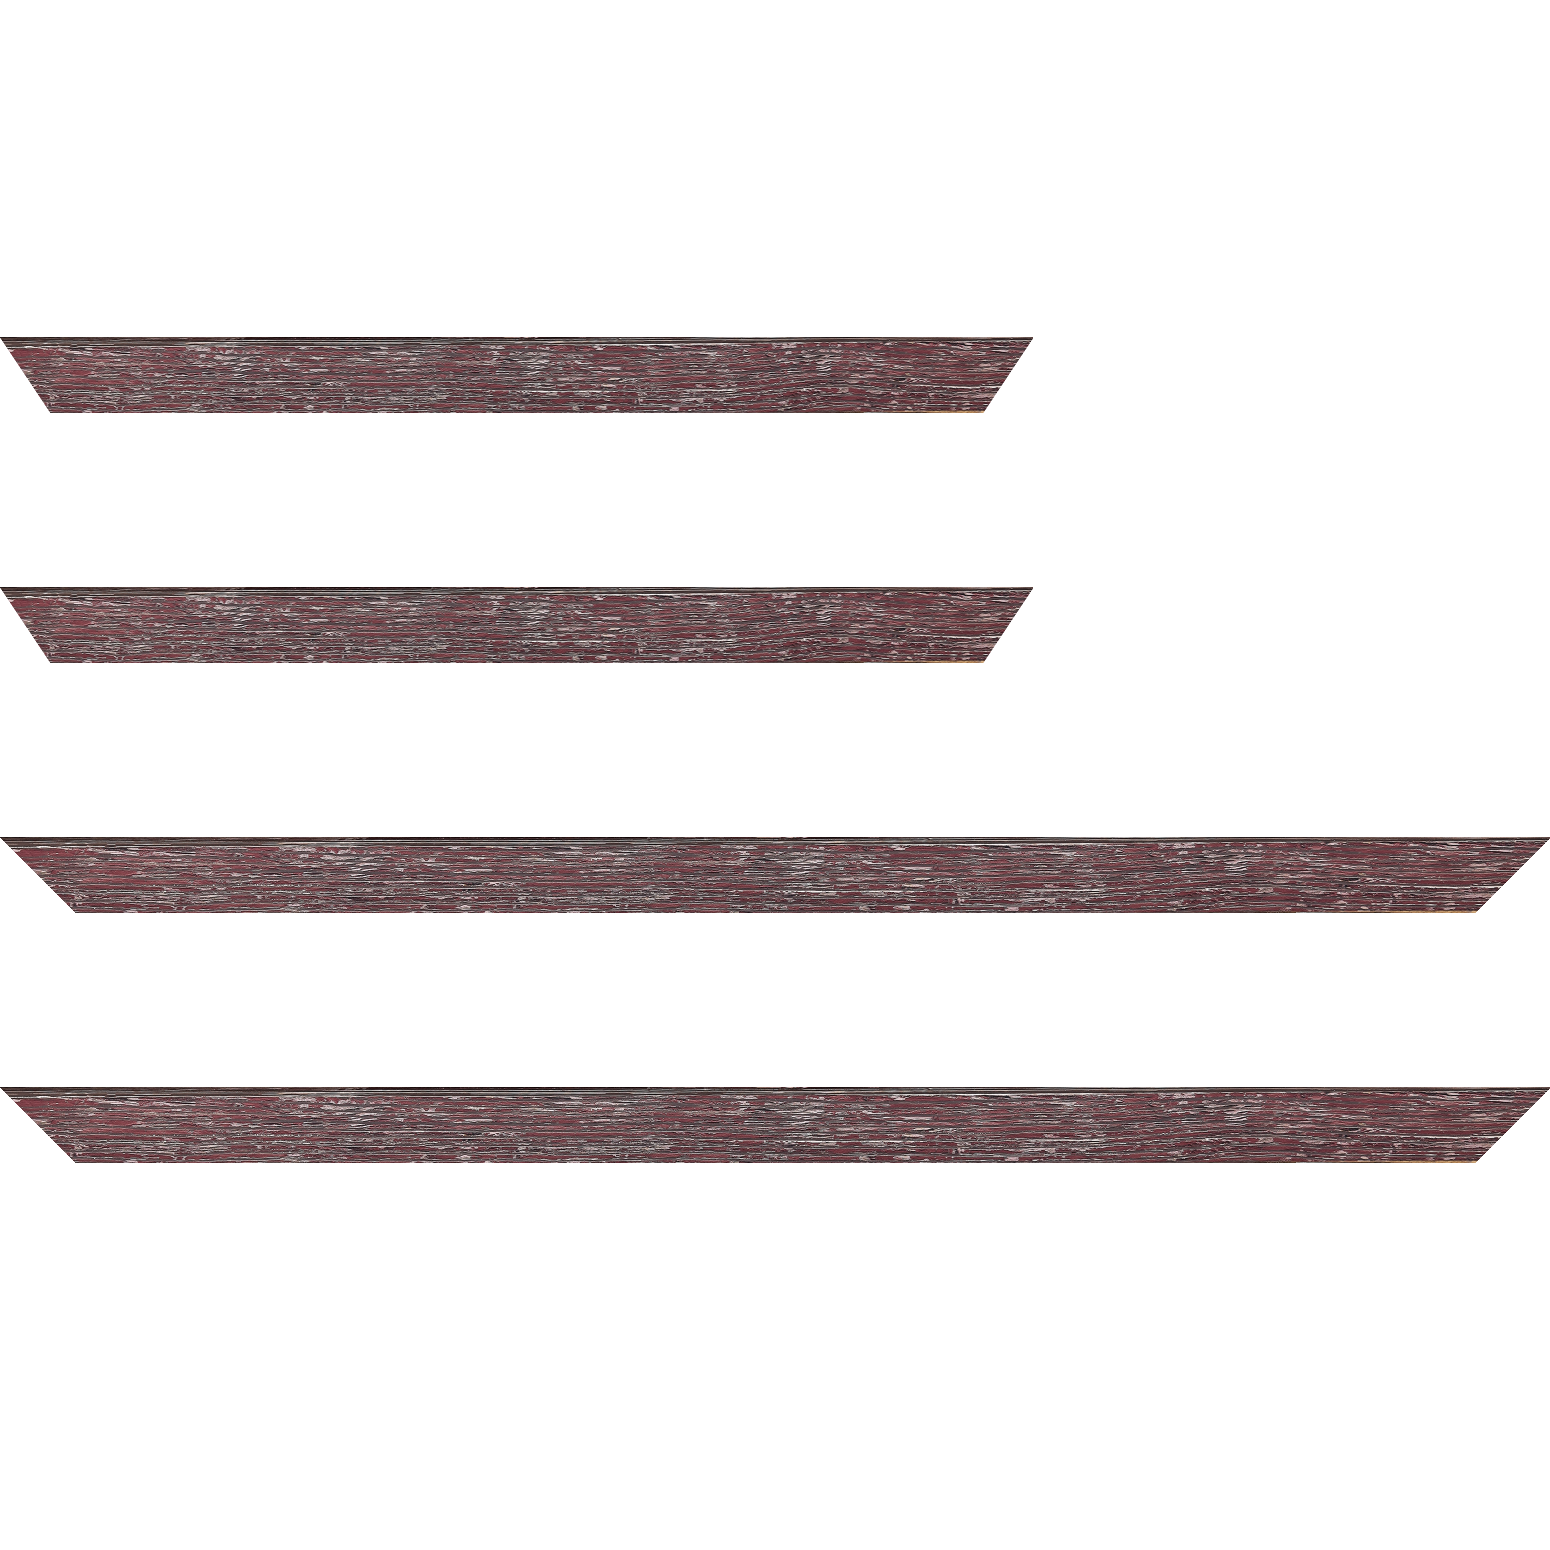 Baguette bois profil arrondi en pente plongeant largeur 2.4cm couleur framboise finition veinée, reflet argenté - 24x30